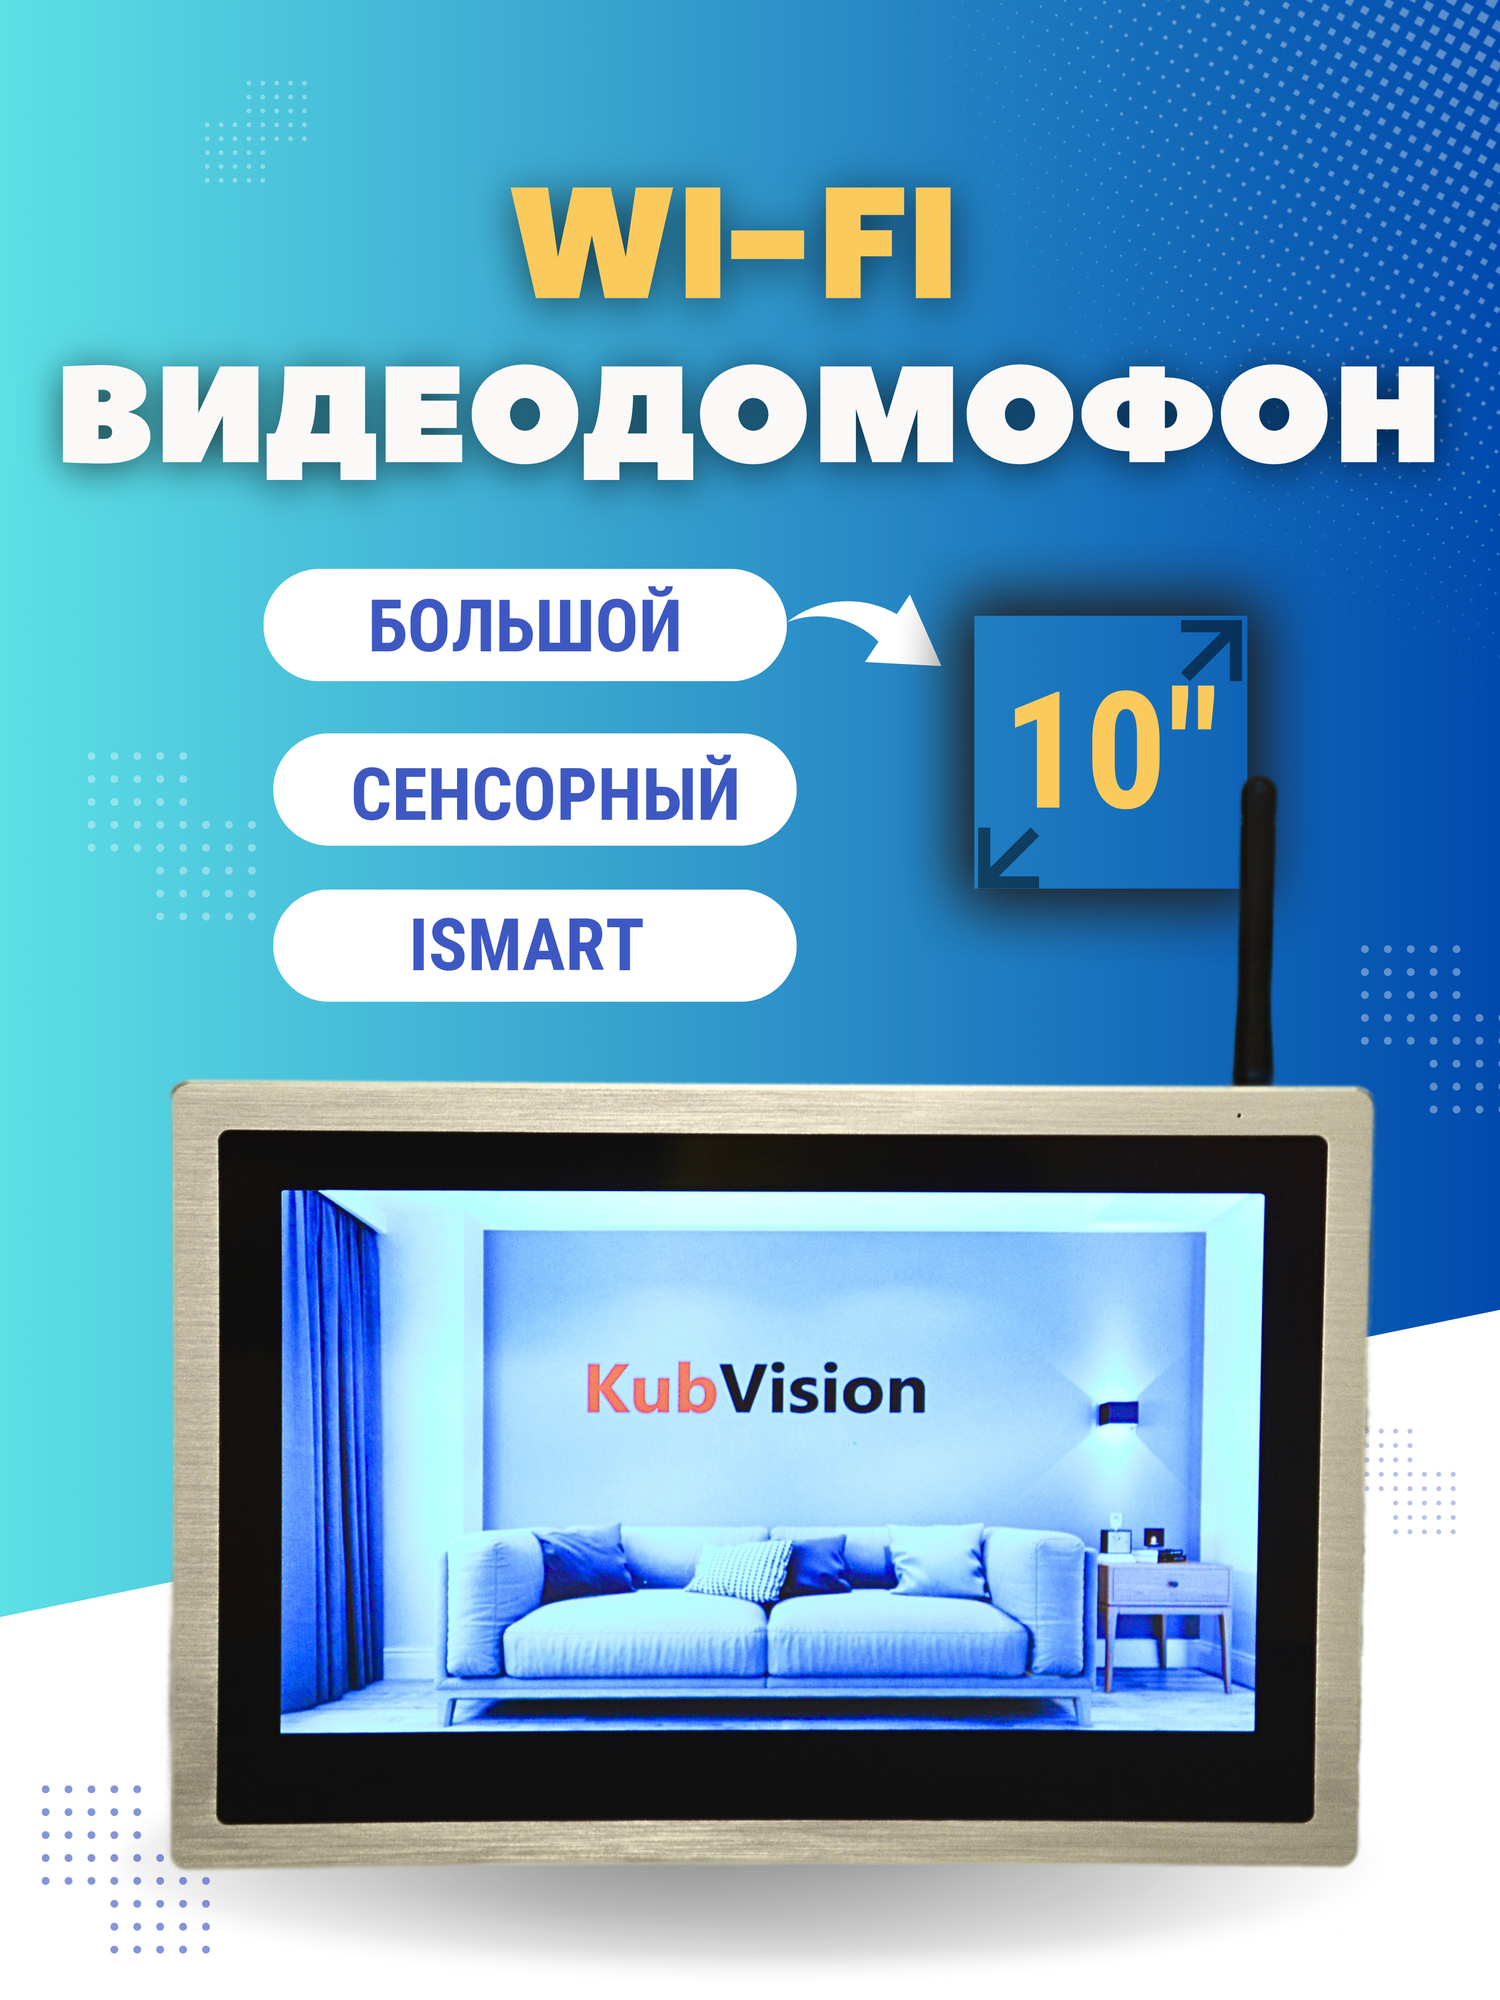 Домофон KubVision 95103H WIFI монитор цветной большой экран, видеодомофон квартирный, комплект, для дома, для квартиры,10 дюймов